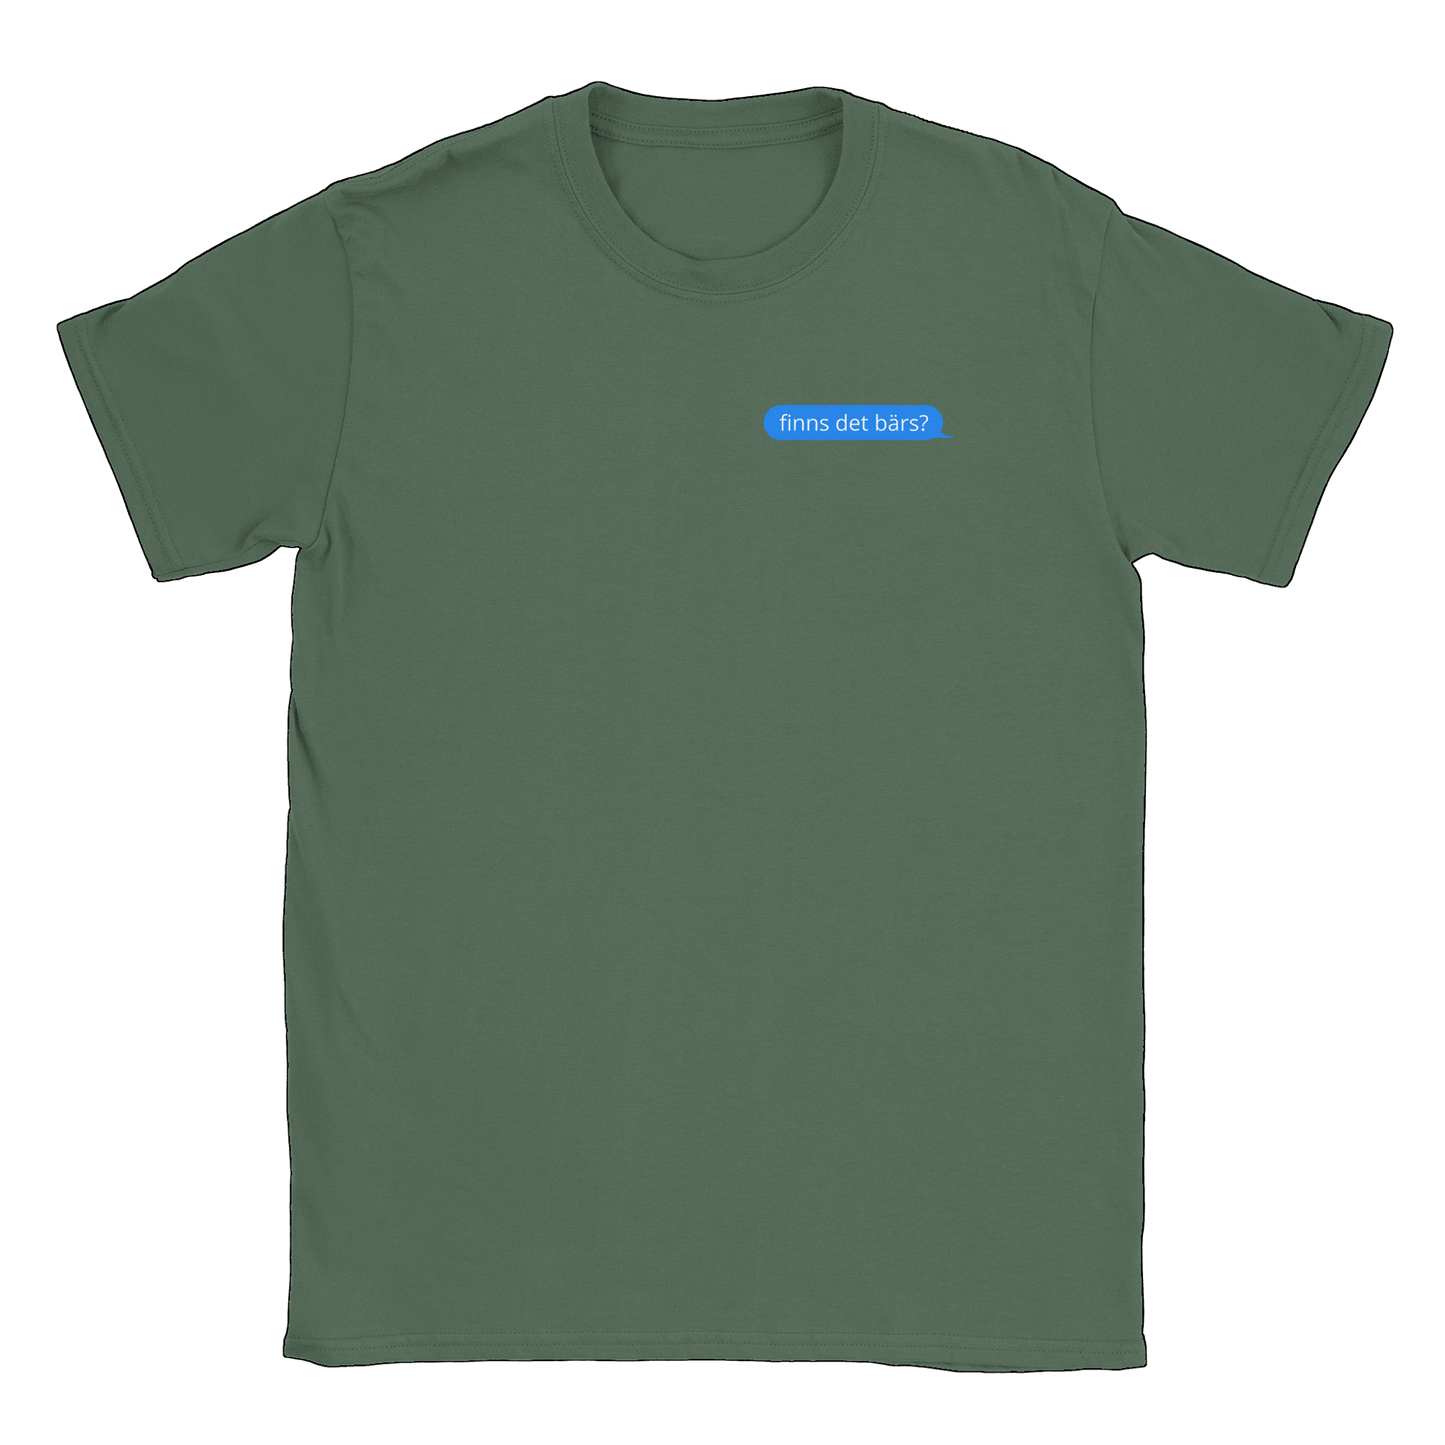 Finns det bärs? - T-shirt Military Green